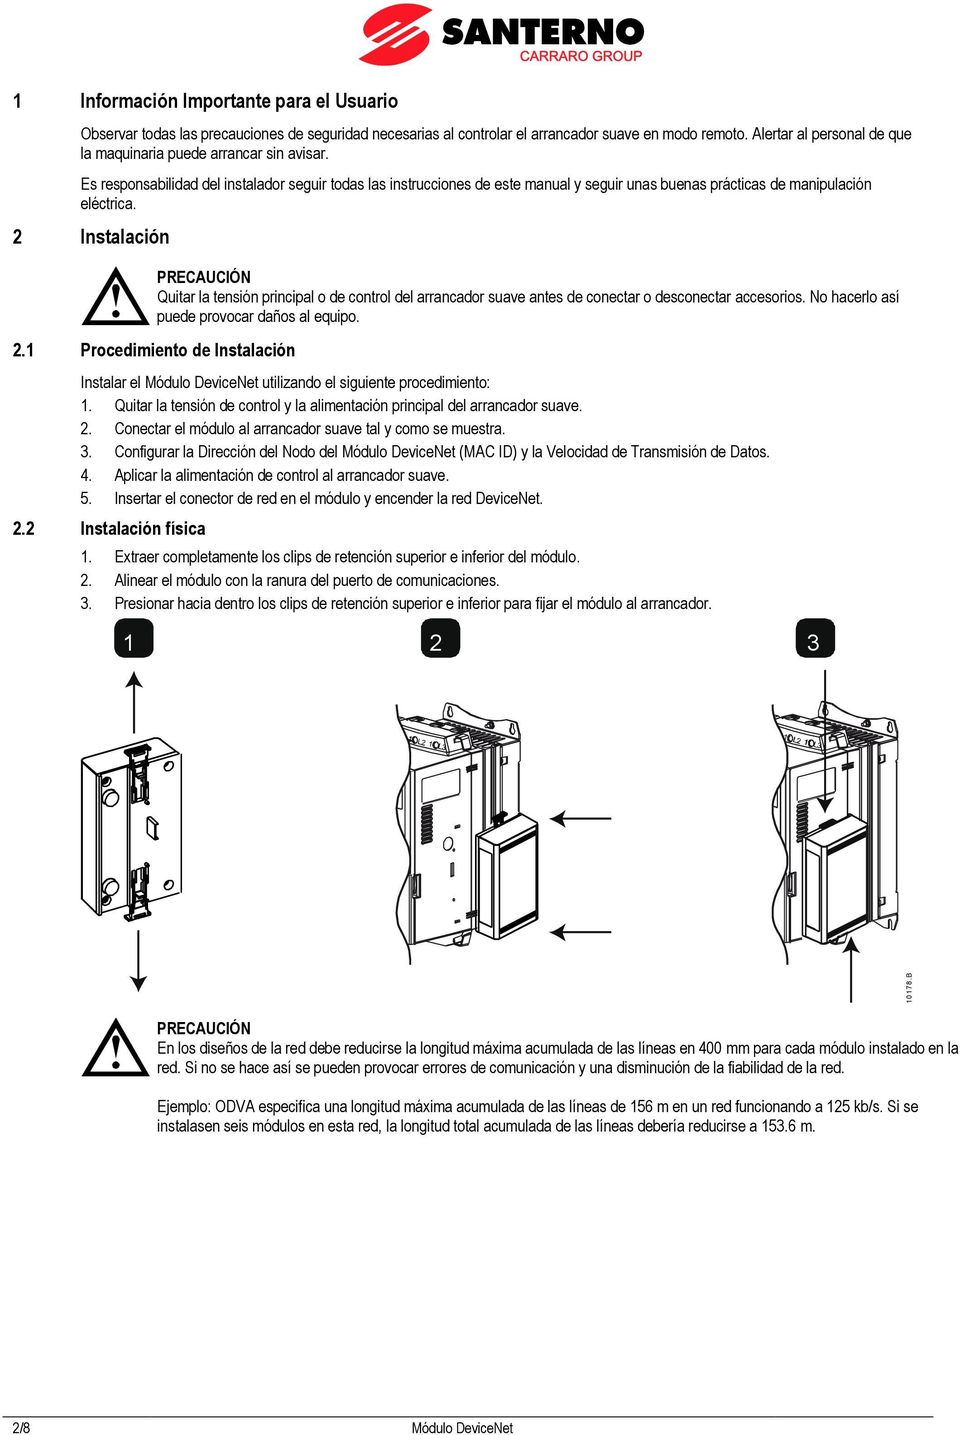 Es responsabilidad del instalador seguir todas las instrucciones de este manual y seguir unas buenas prácticas de manipulación eléctrica.